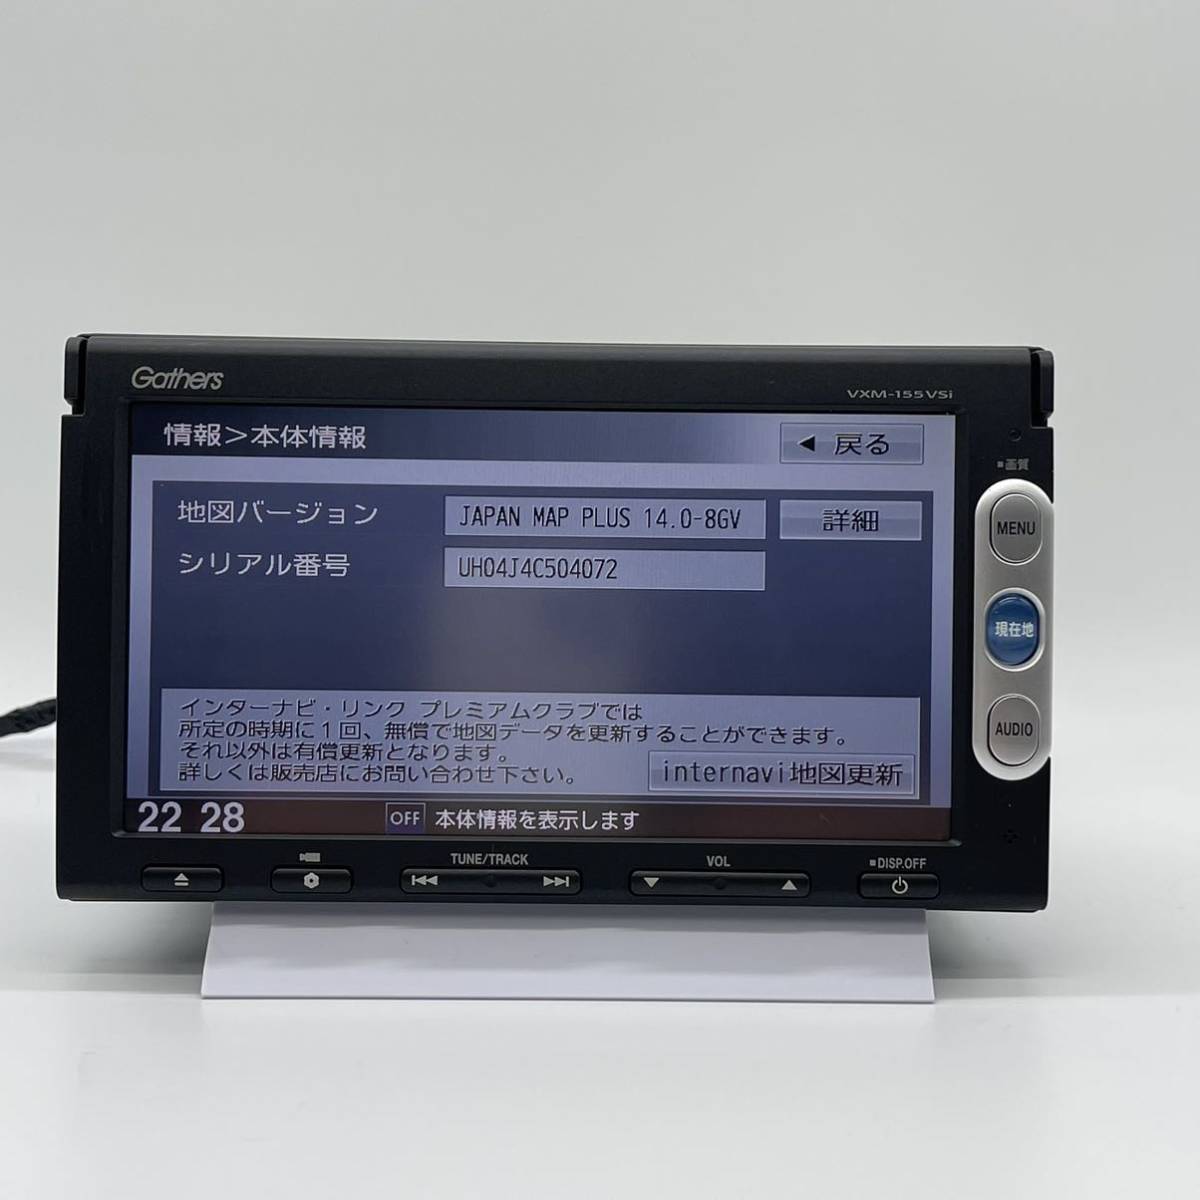 ホンダ ギャザーズ 純正 ナビ VXM-155VSI 地デジ ワンセグ CD USB iPod 